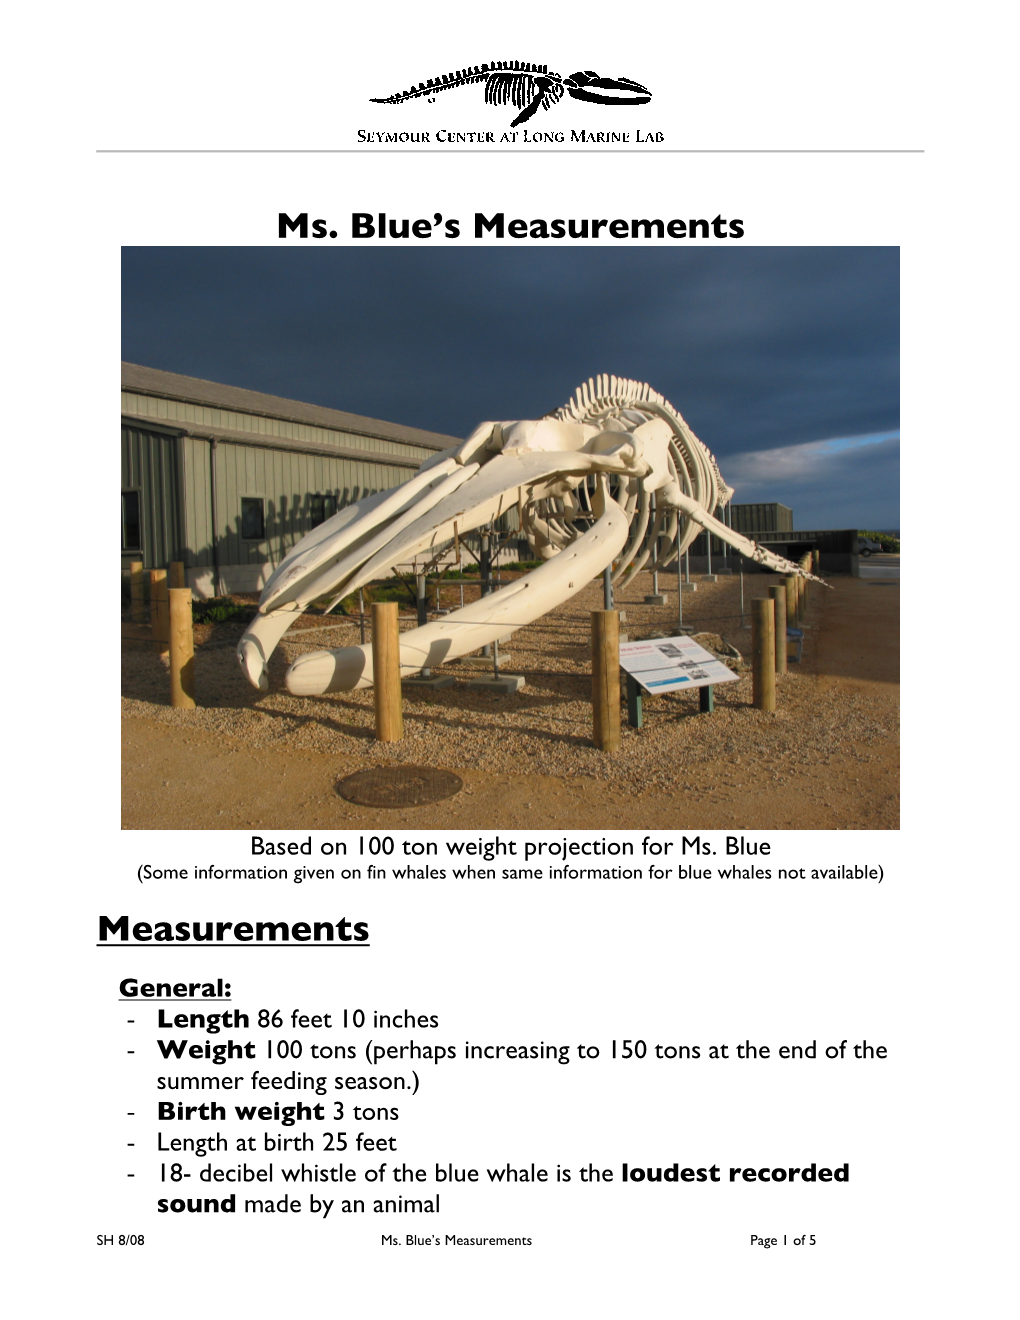 Ms. Blue's Measurements Measurements